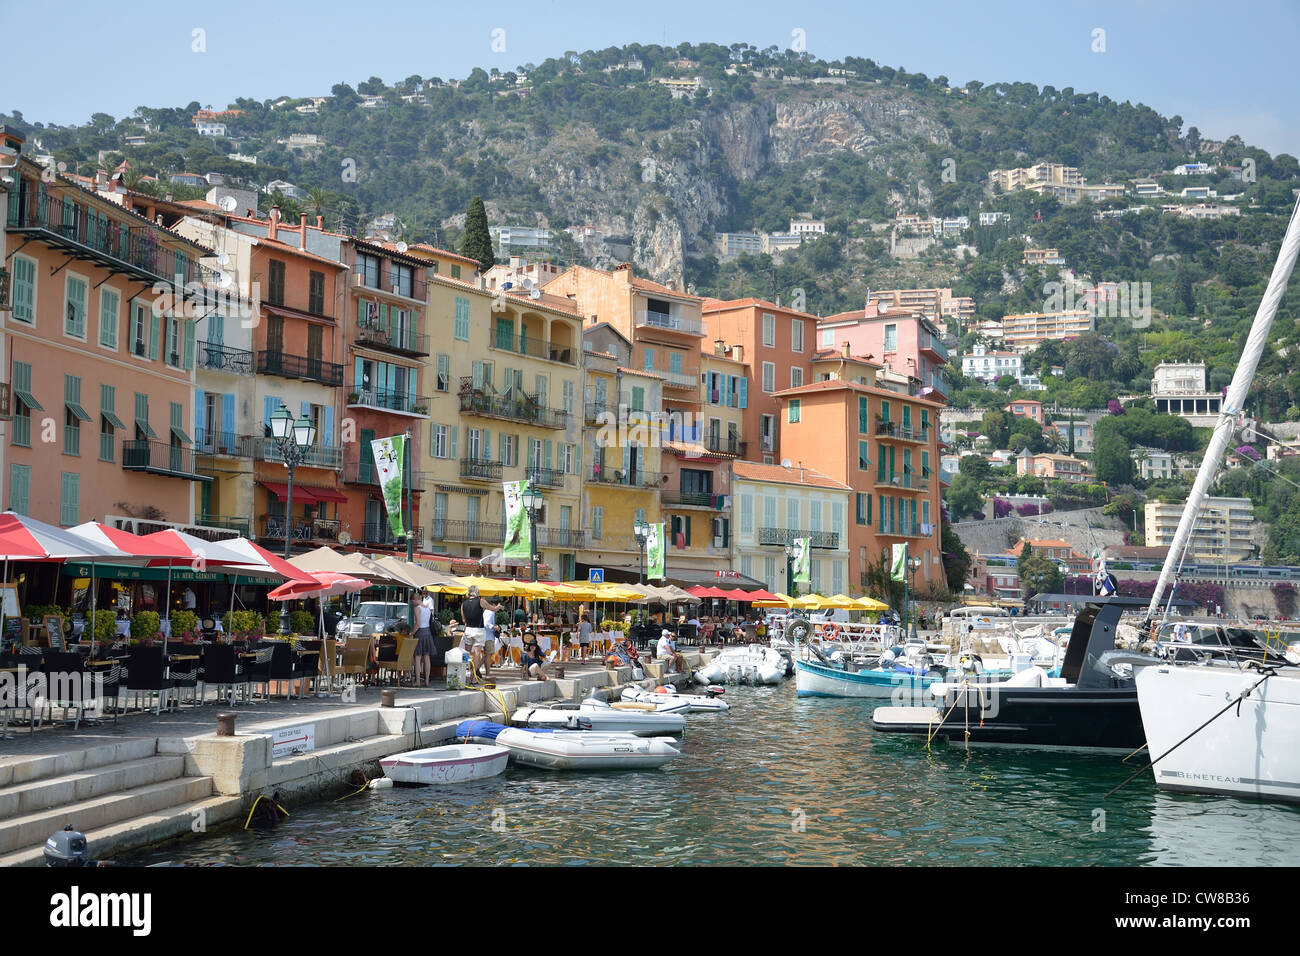 Darse Royal Harbour XVI Jahrhundert, Villefranche-Sur-Mer, Côte d ' Azur, Alpes-Maritimes, Provence-Alpes-Côte d ' Azur, Frankreich Stockfoto